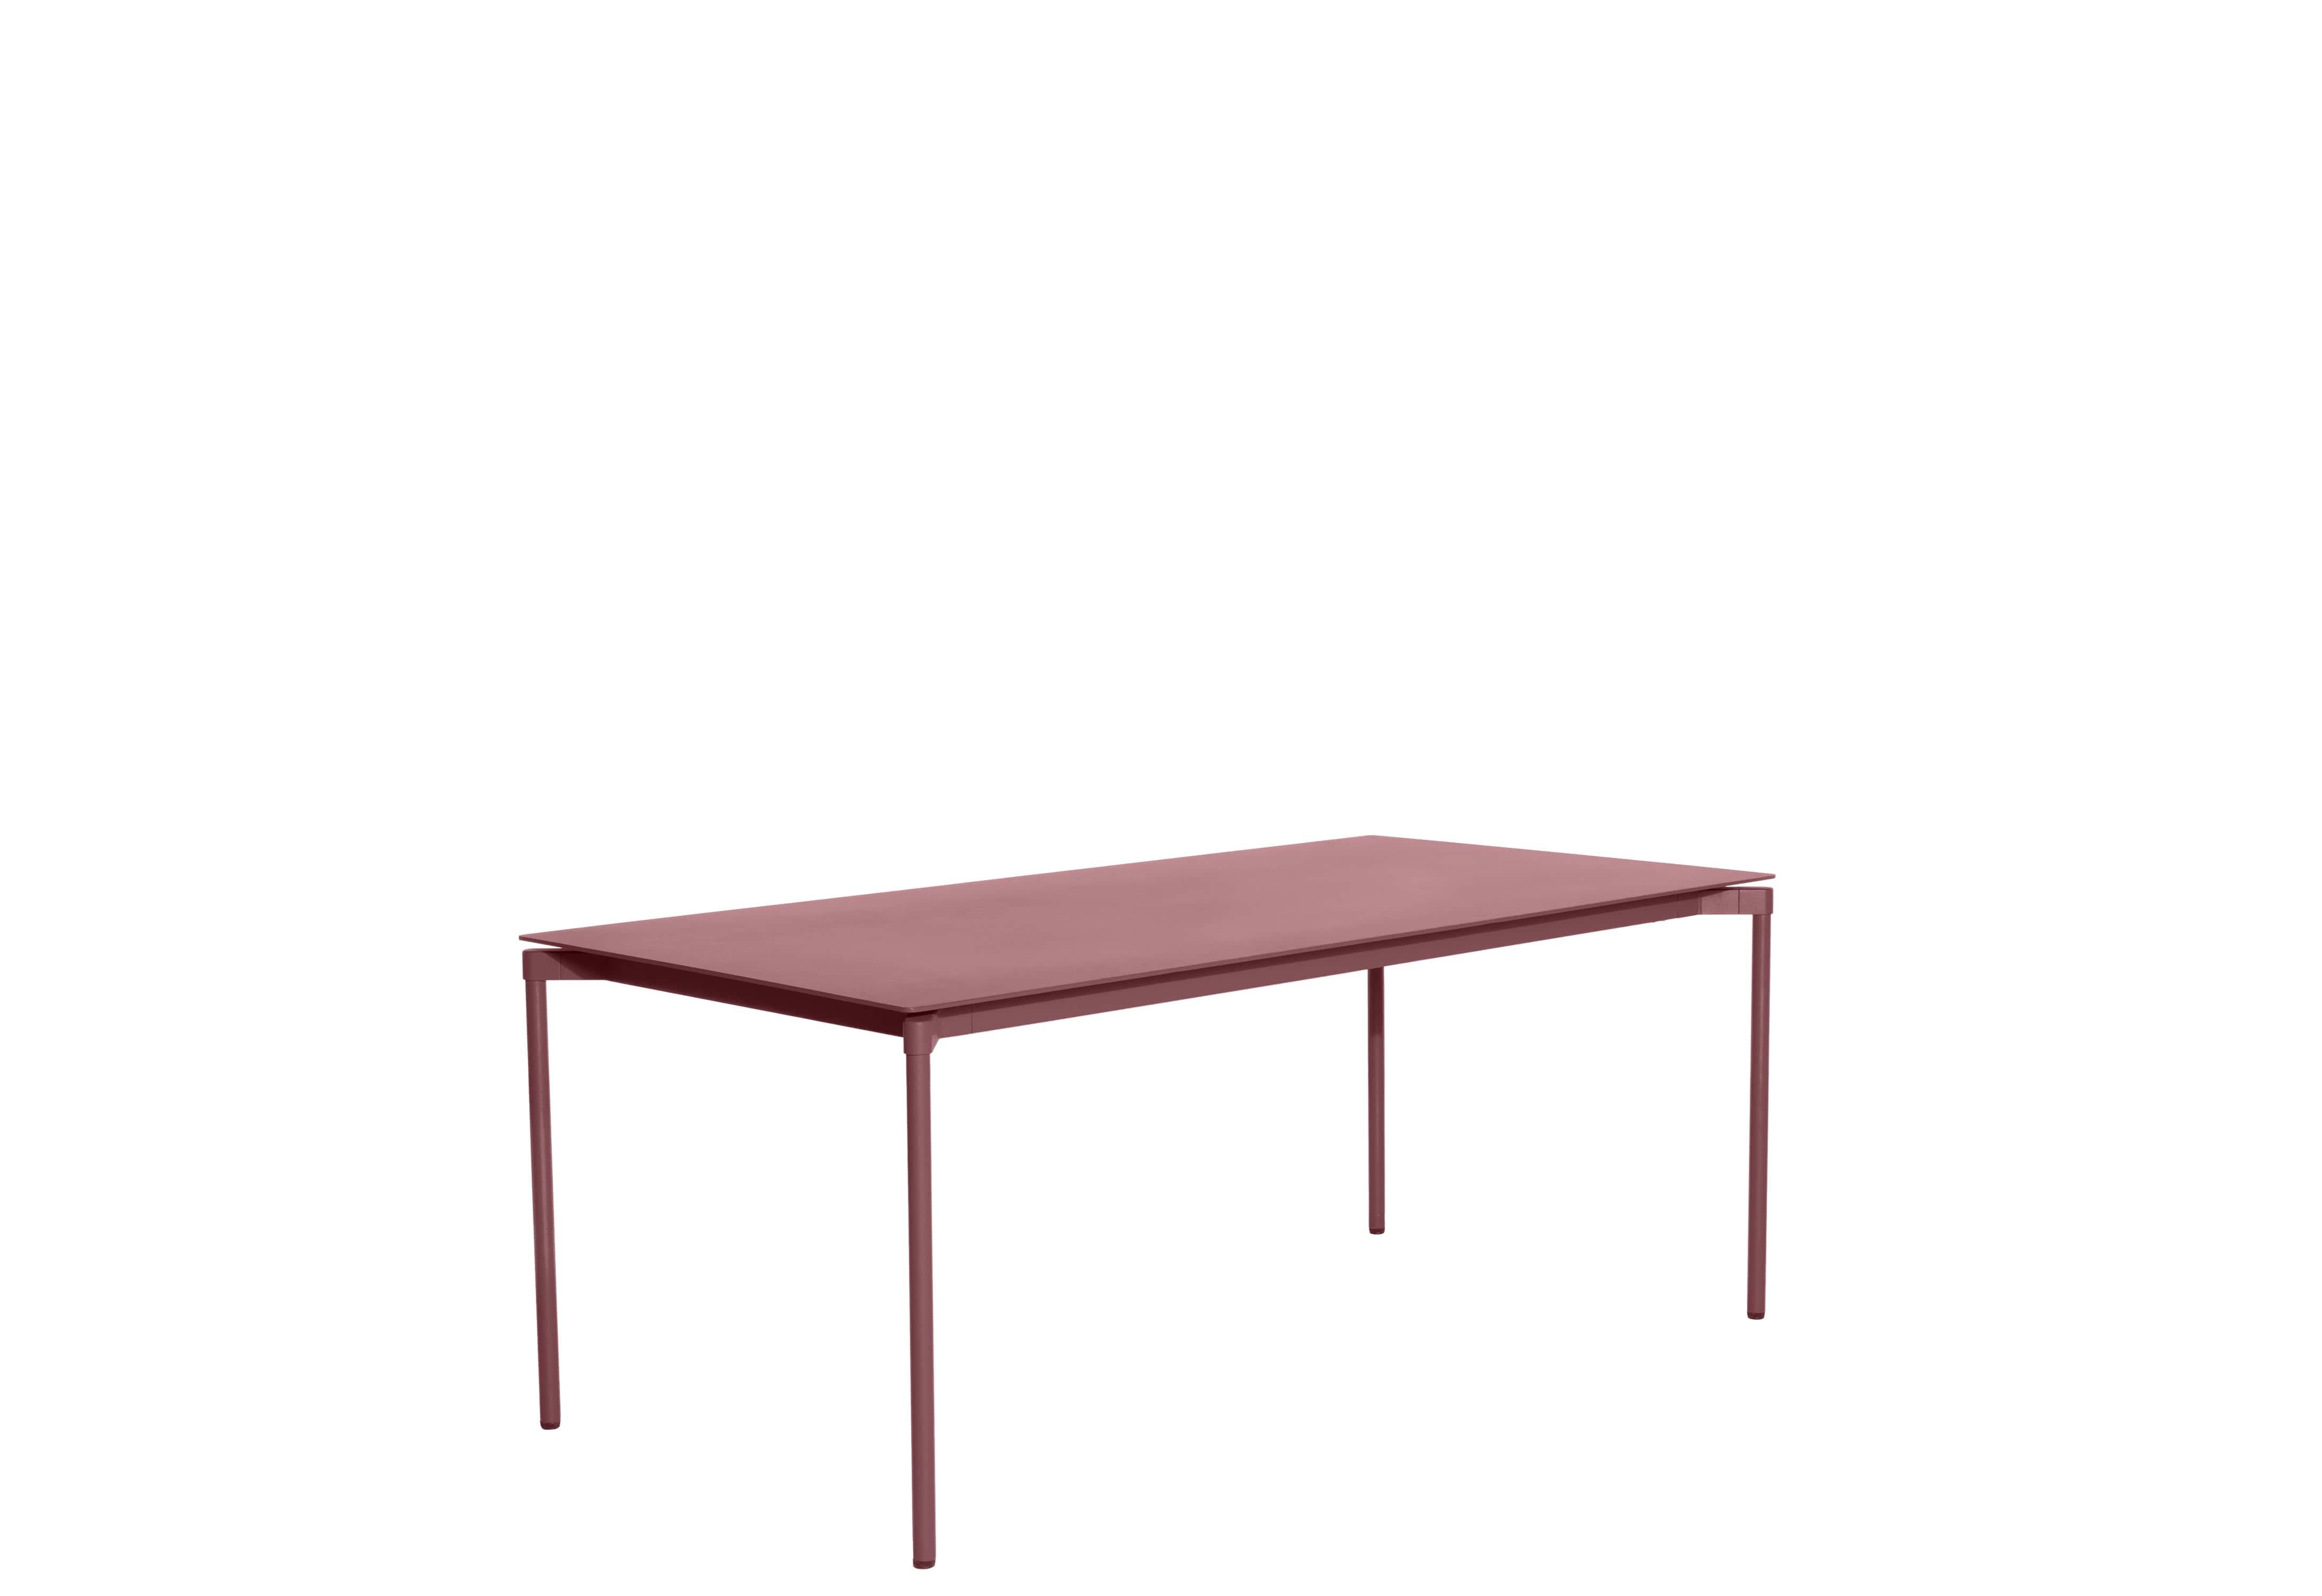 Petite Friture Fromme Table rectangulaire en aluminium brun-rouge par Tom Chung, 2020

La collection S/One se distingue par sa ligne épurée et son design compact. Les absorbeurs placés sous les sièges leur confèrent une flexibilité souple et très